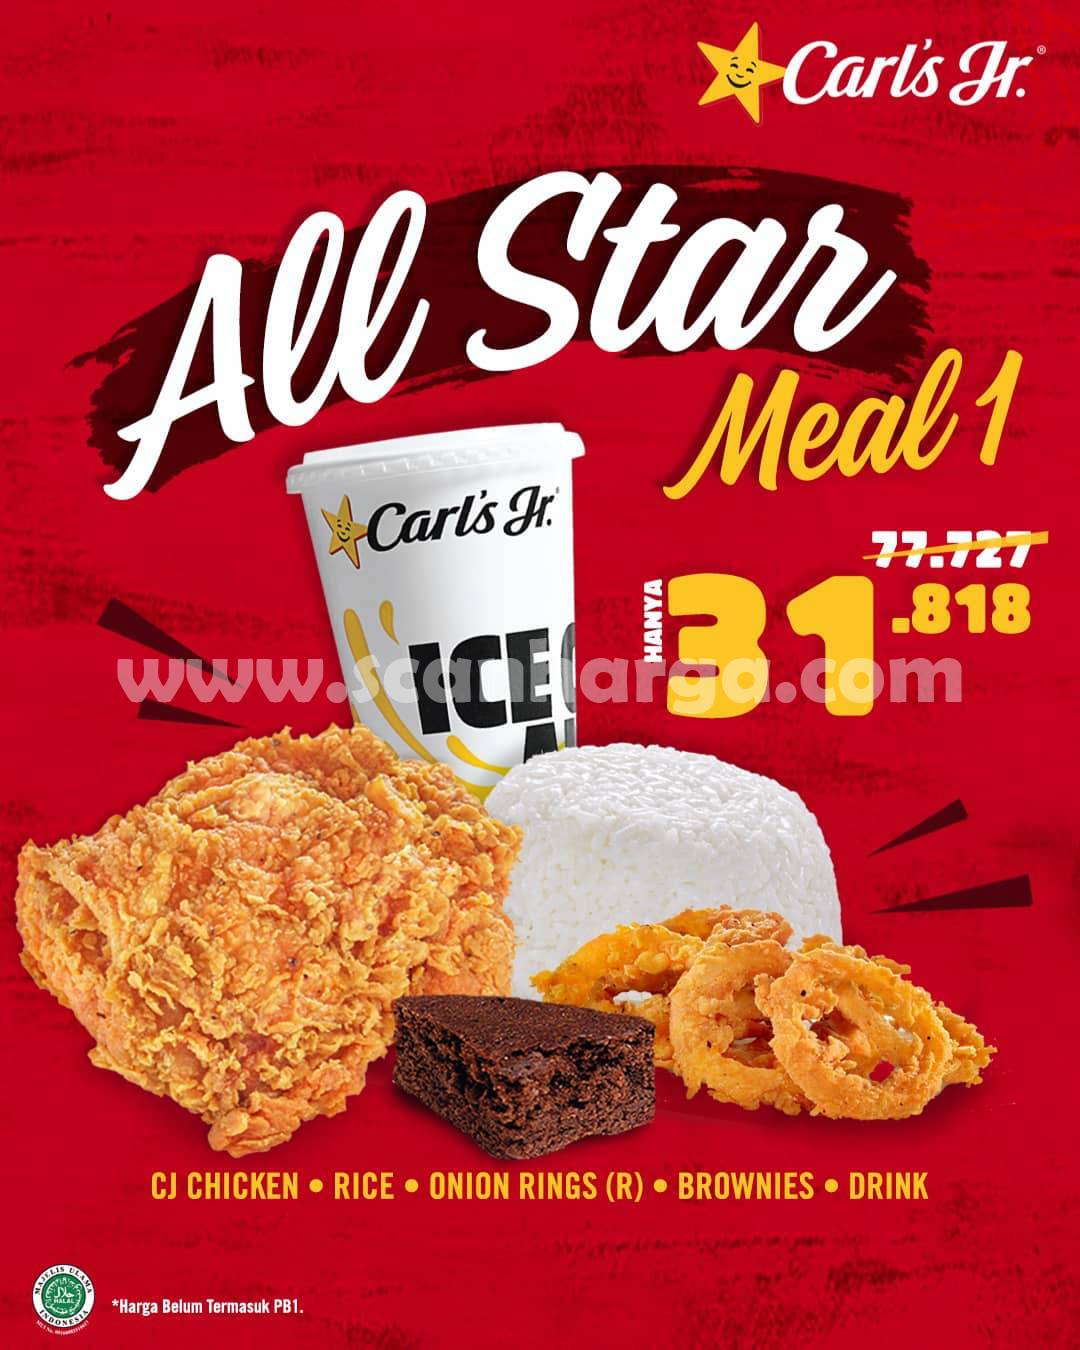 CARL’S JR Promo Paket ALL STAR MEAL 1 – Harga hanya Rp. 31.818